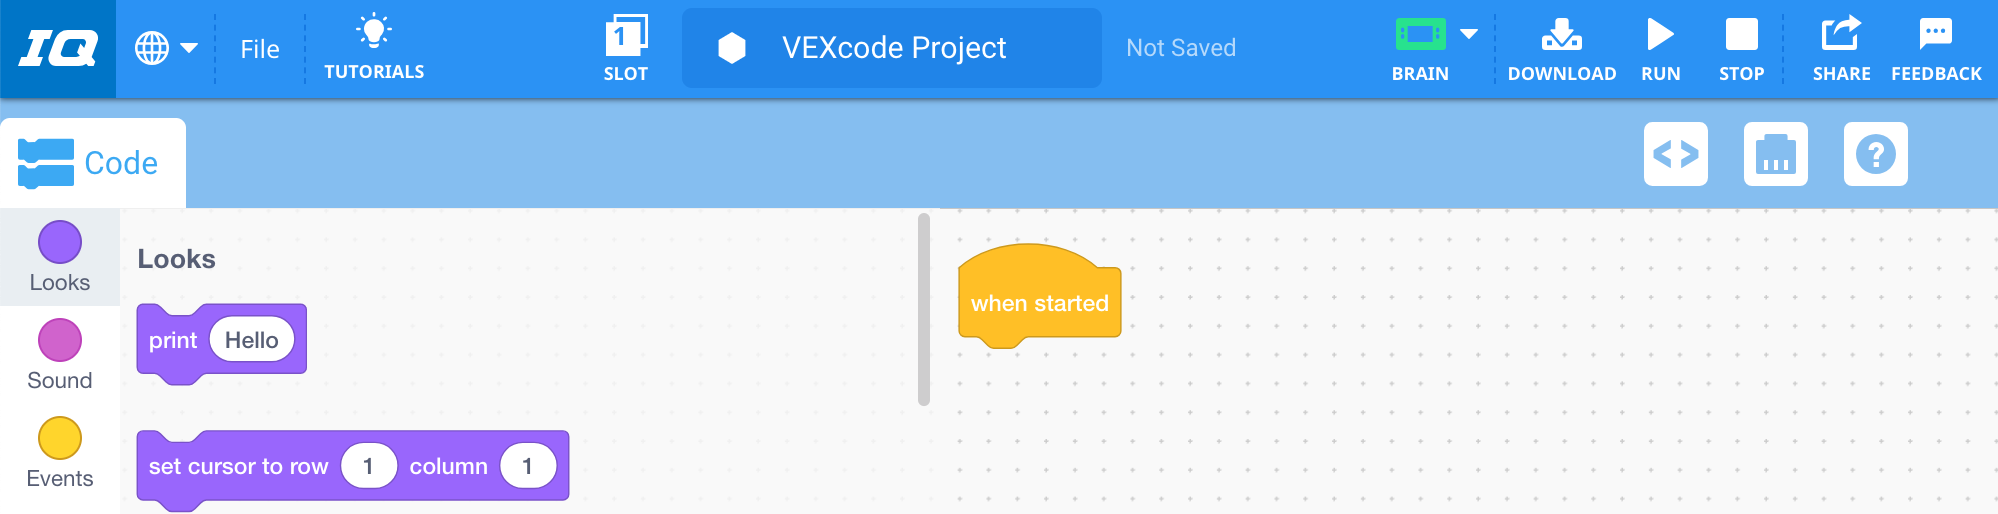 Start VEXcode